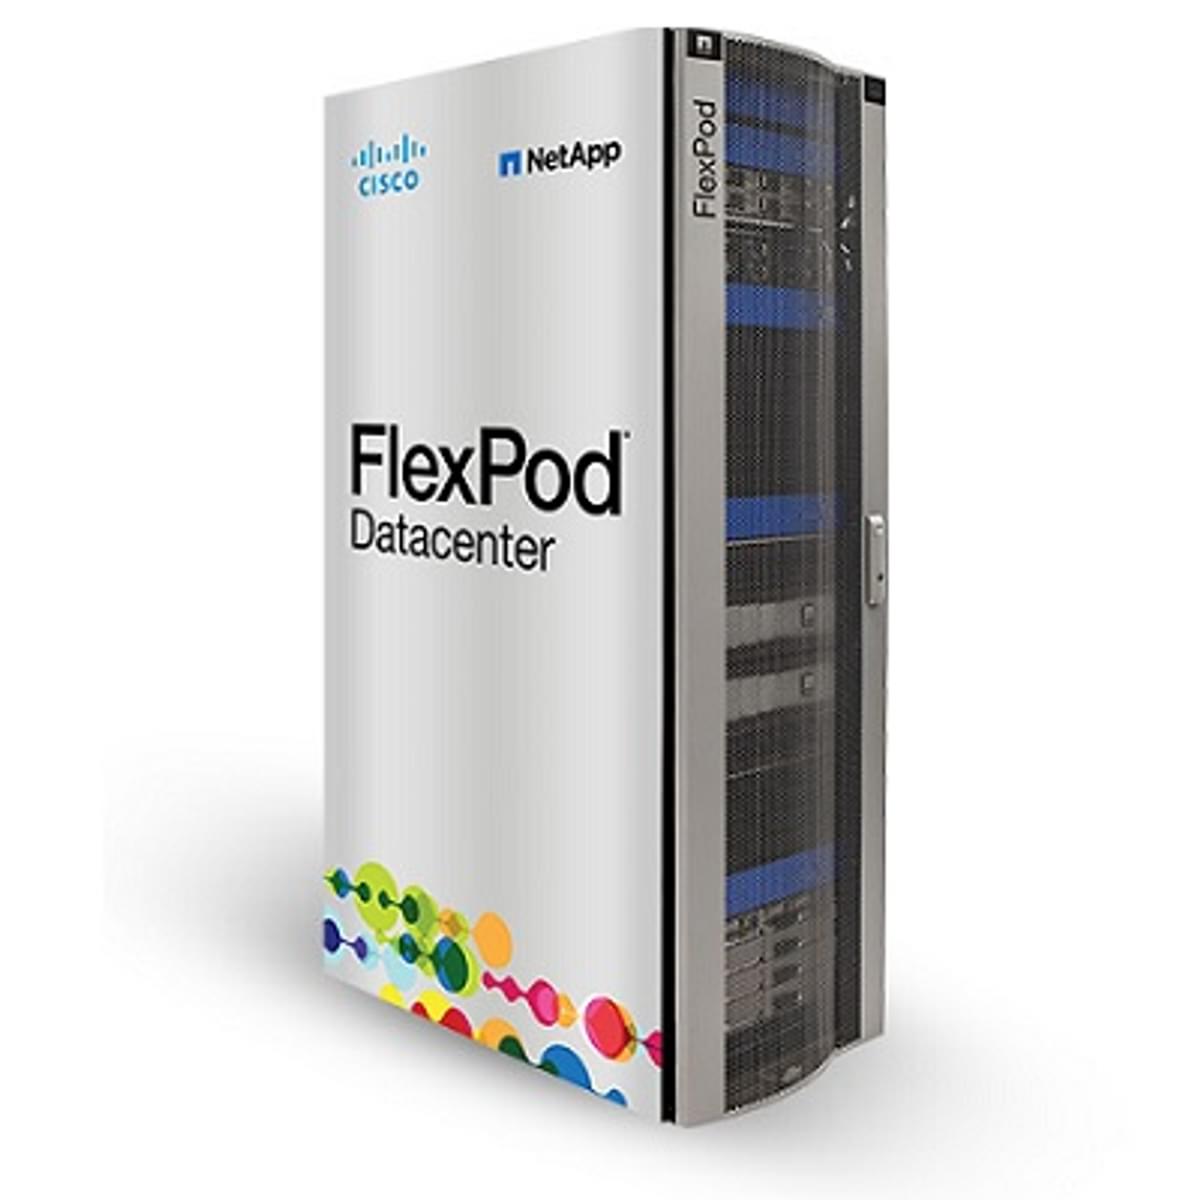 Cisco en NetApp introduceren nieuwe oplossingen voor FlexPod image